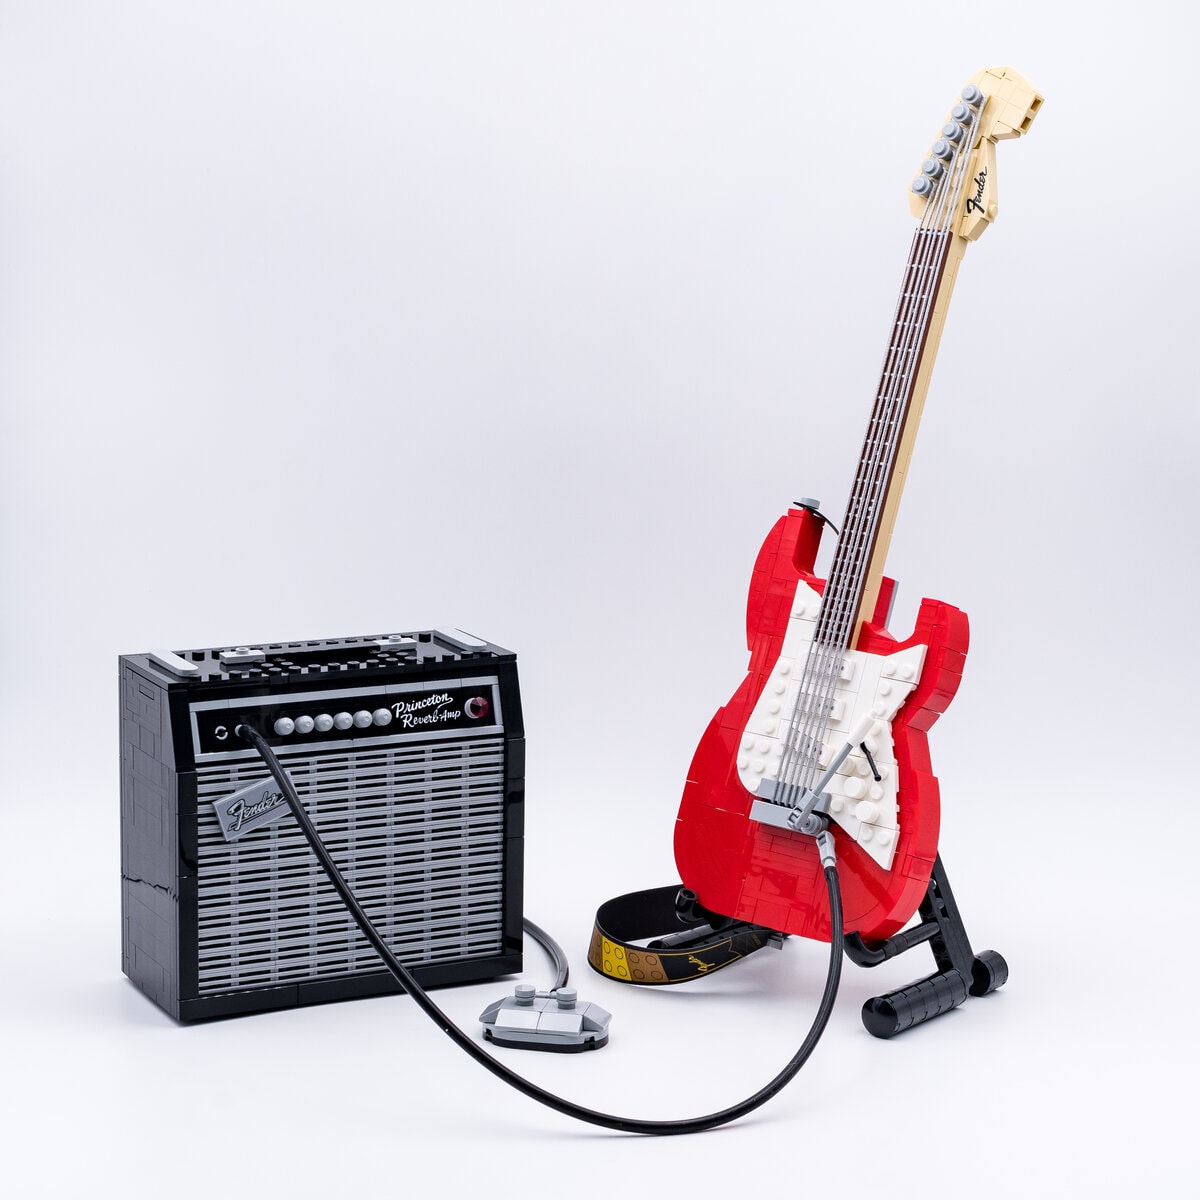 Review LEGO Ideas 21329 Fender Stratocaster - HelloBricks